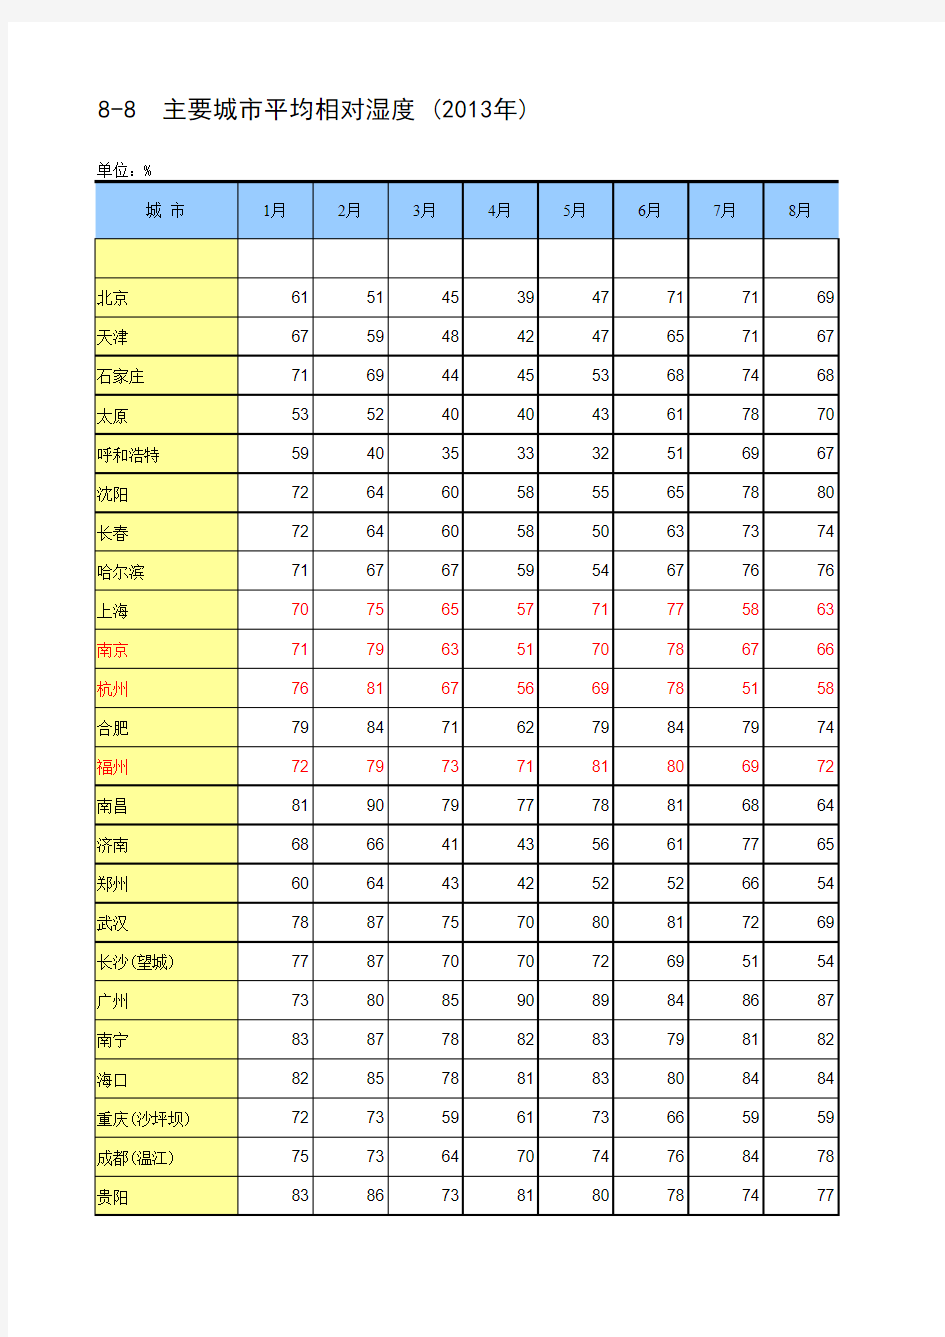 中国统计年鉴2014主要城市平均相对湿度-(2013年)